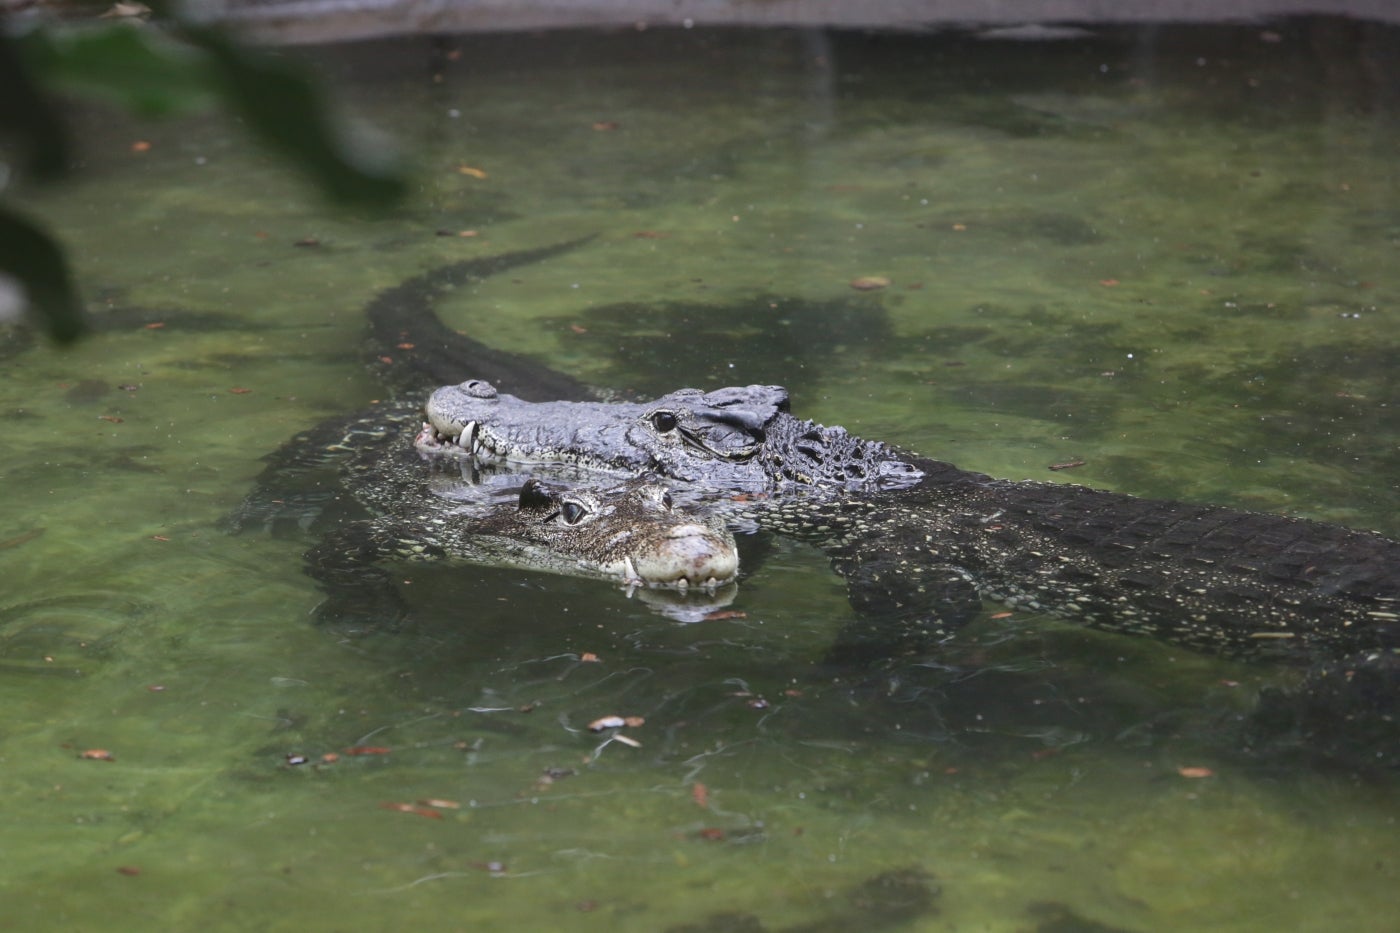 Cuban Crocodiles in the water